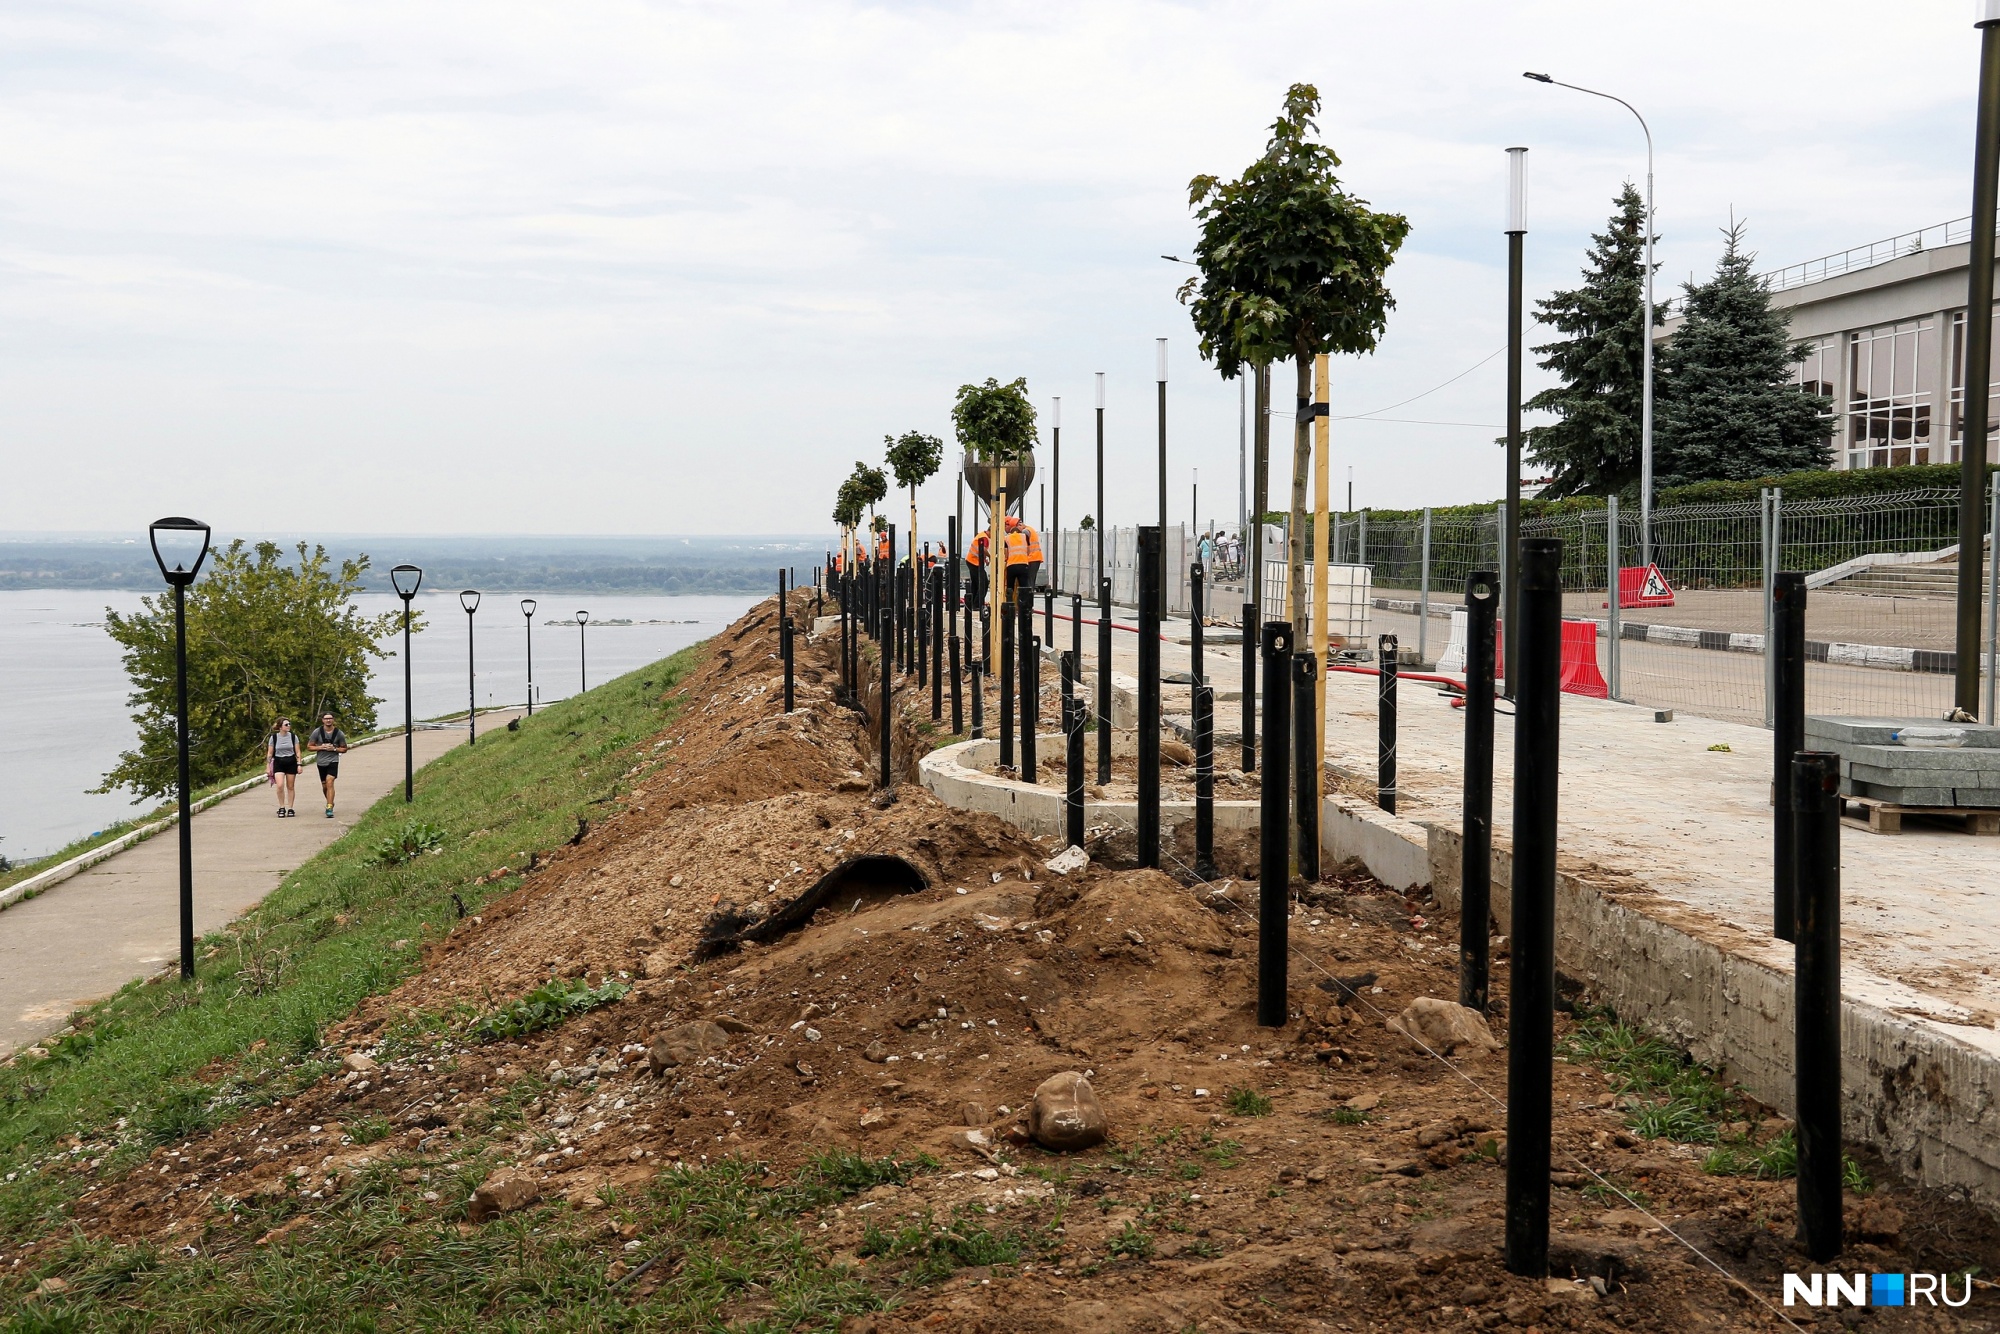 Вдоль пешеходной дорожки на Заломова уже высадили деревья